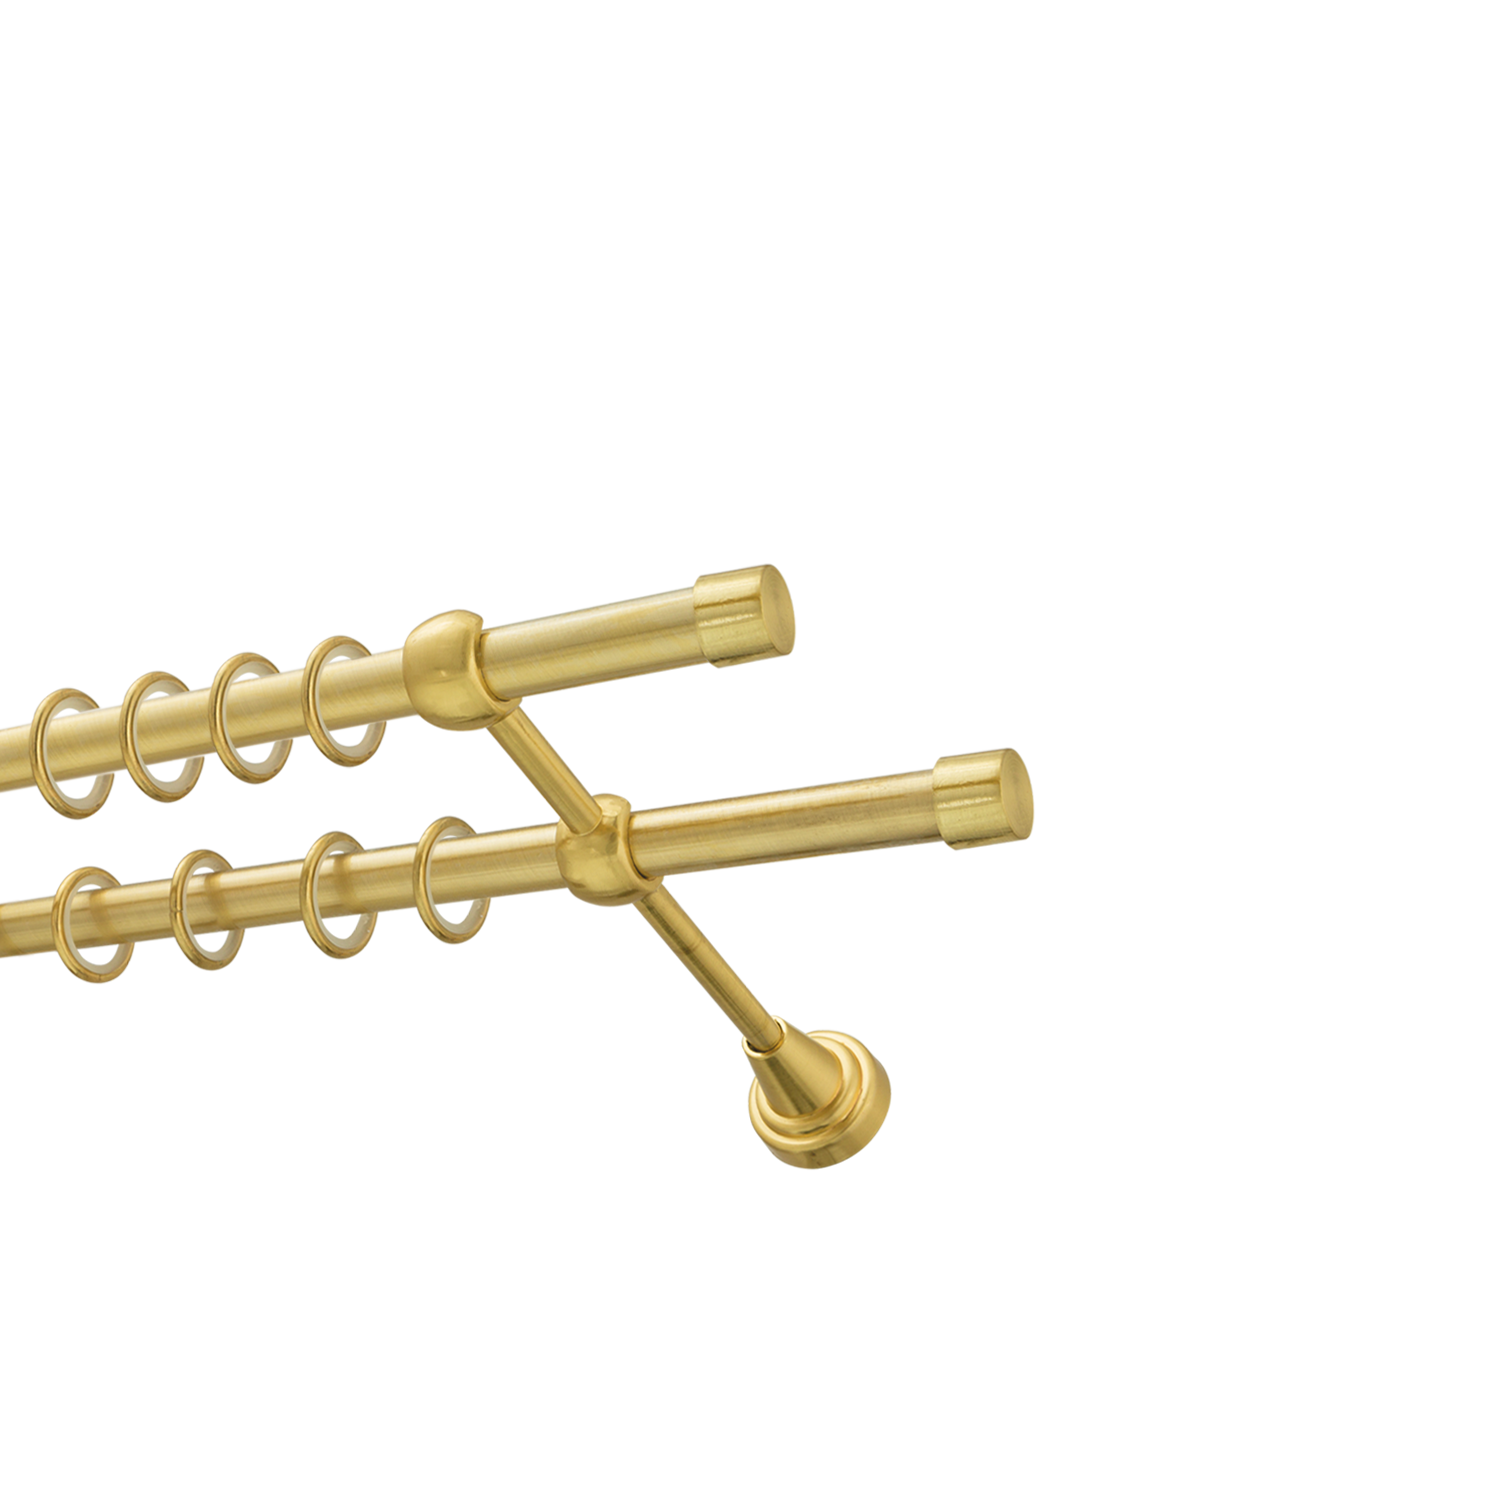 Металлический карниз для штор Заглушка, двухрядный 16/16 мм, золото, гладкая штанга, длина 300 см - фото Wikidecor.ru